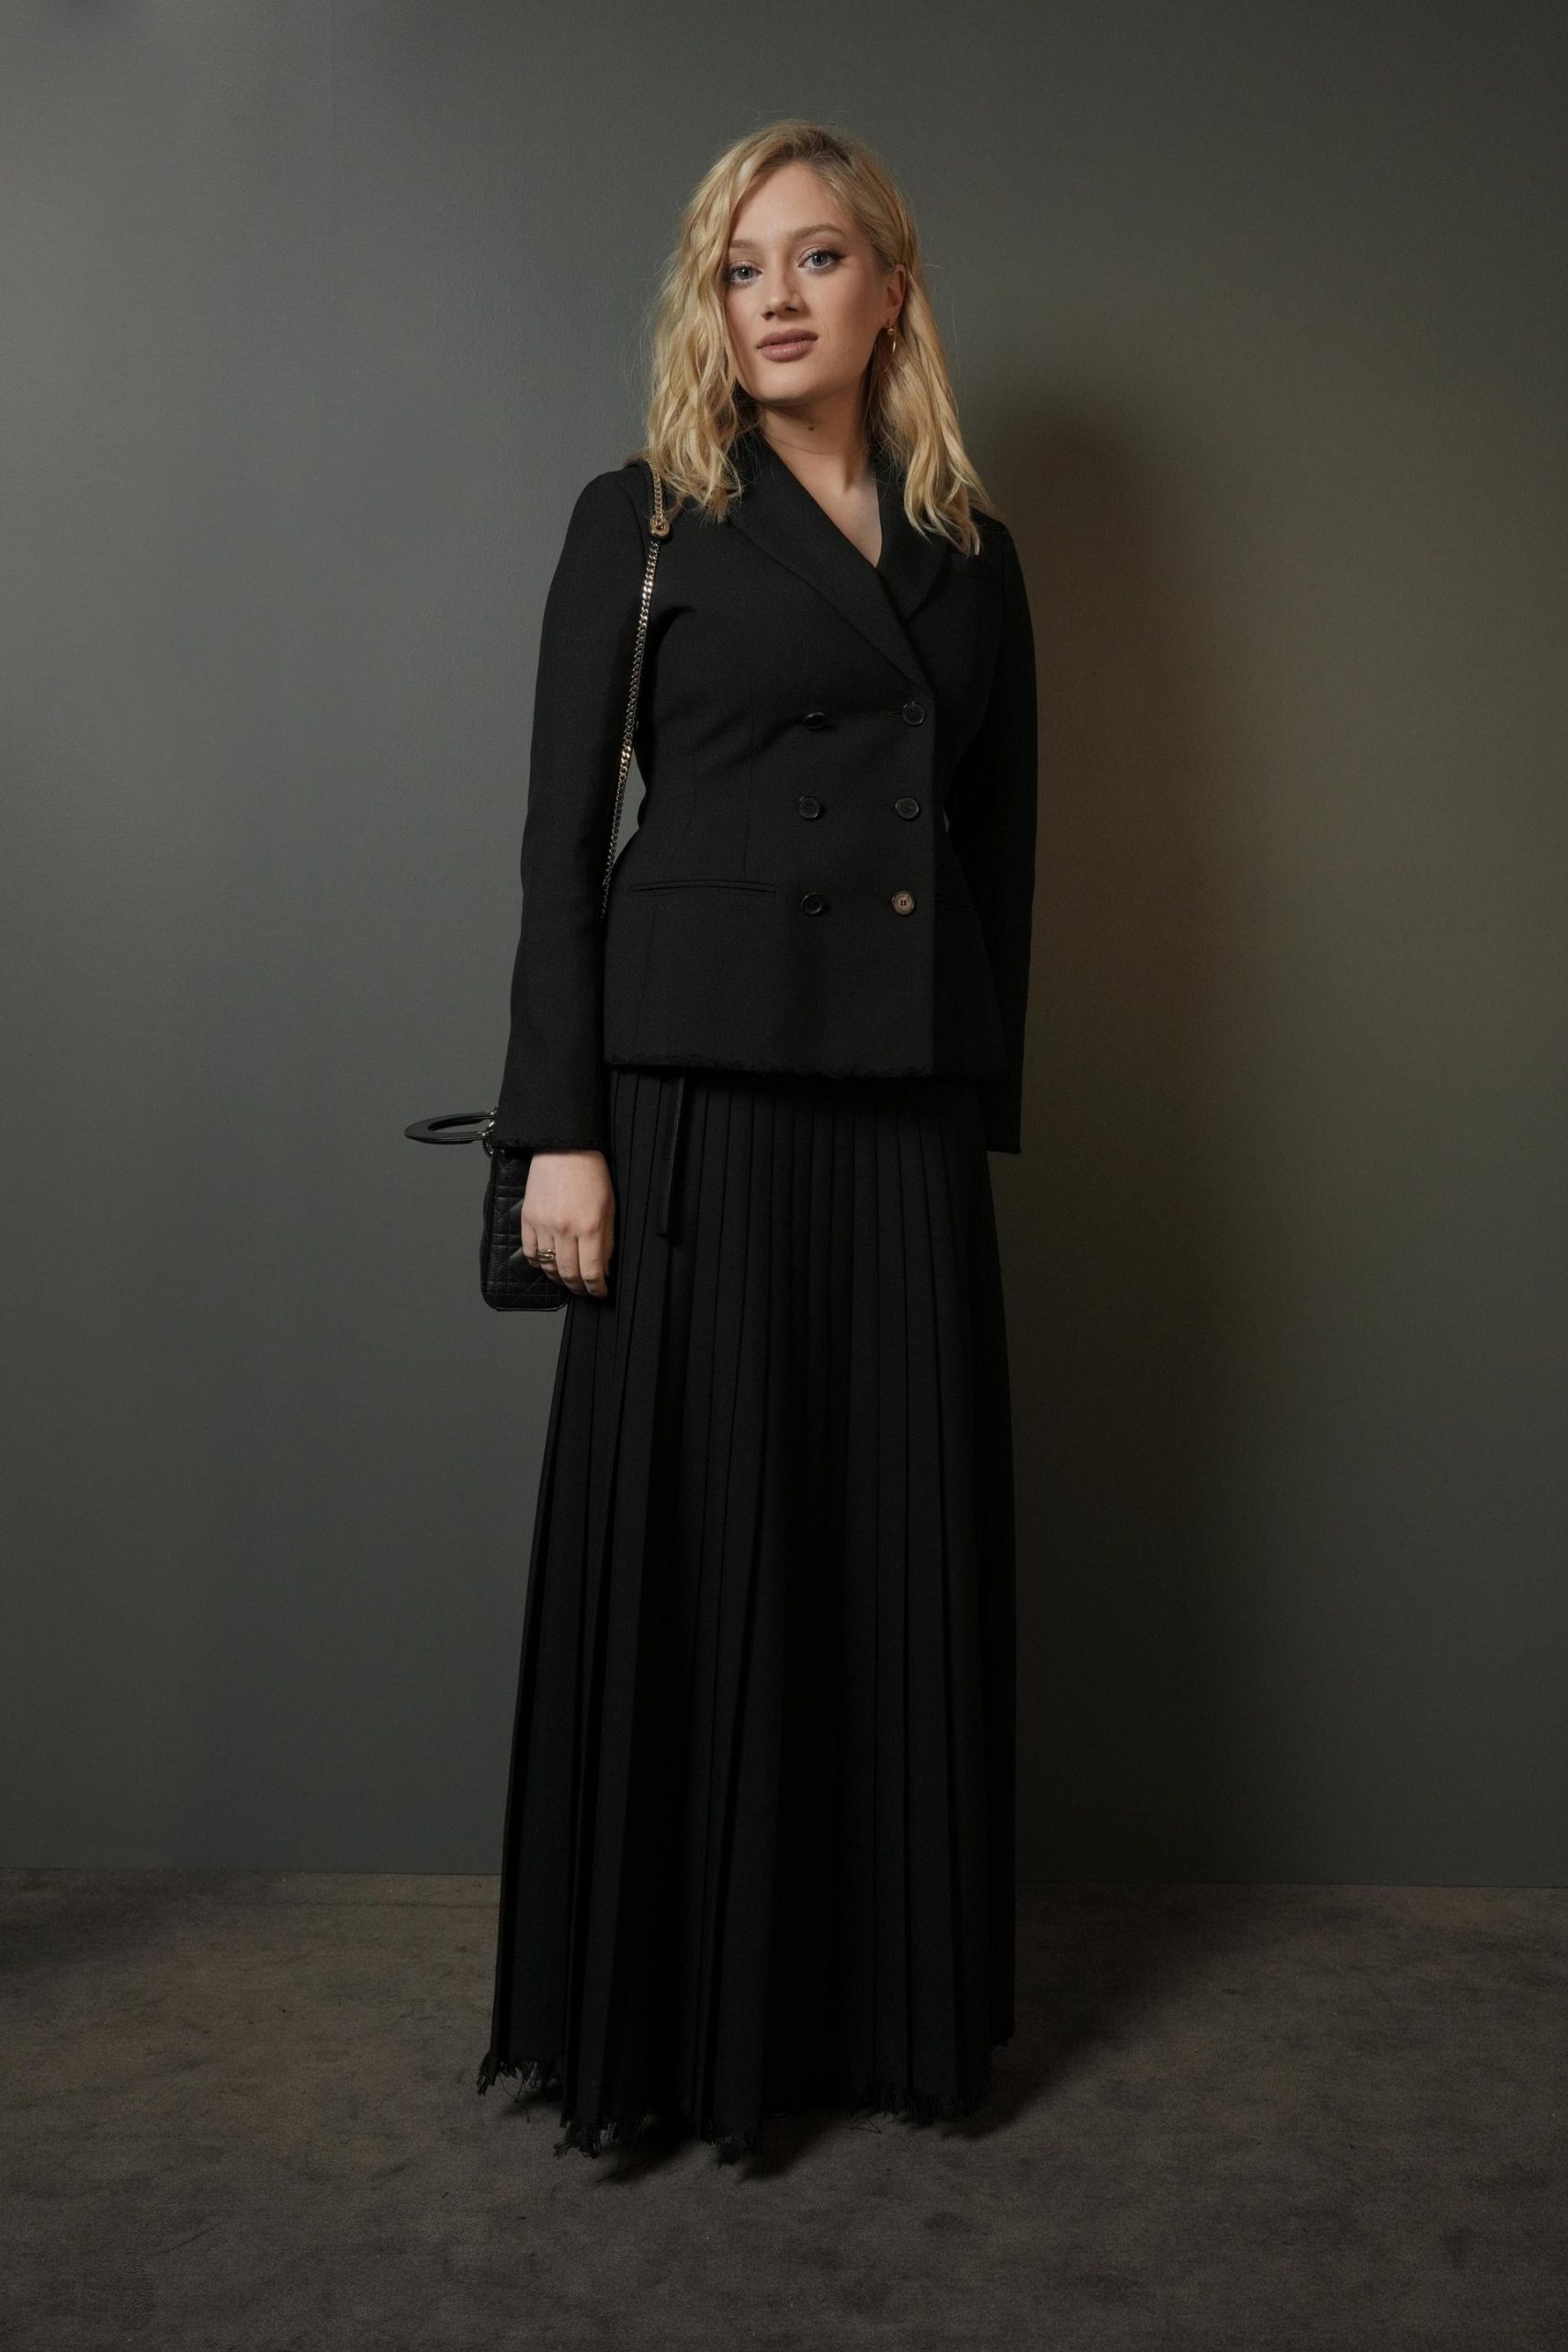 Η Nadia Tereszkiewicz φόρεσε ένα μαύρο σακάκι Dior από μαλλί και μετάξι με μαύρη πλισέ μεταξωτή φούστα.